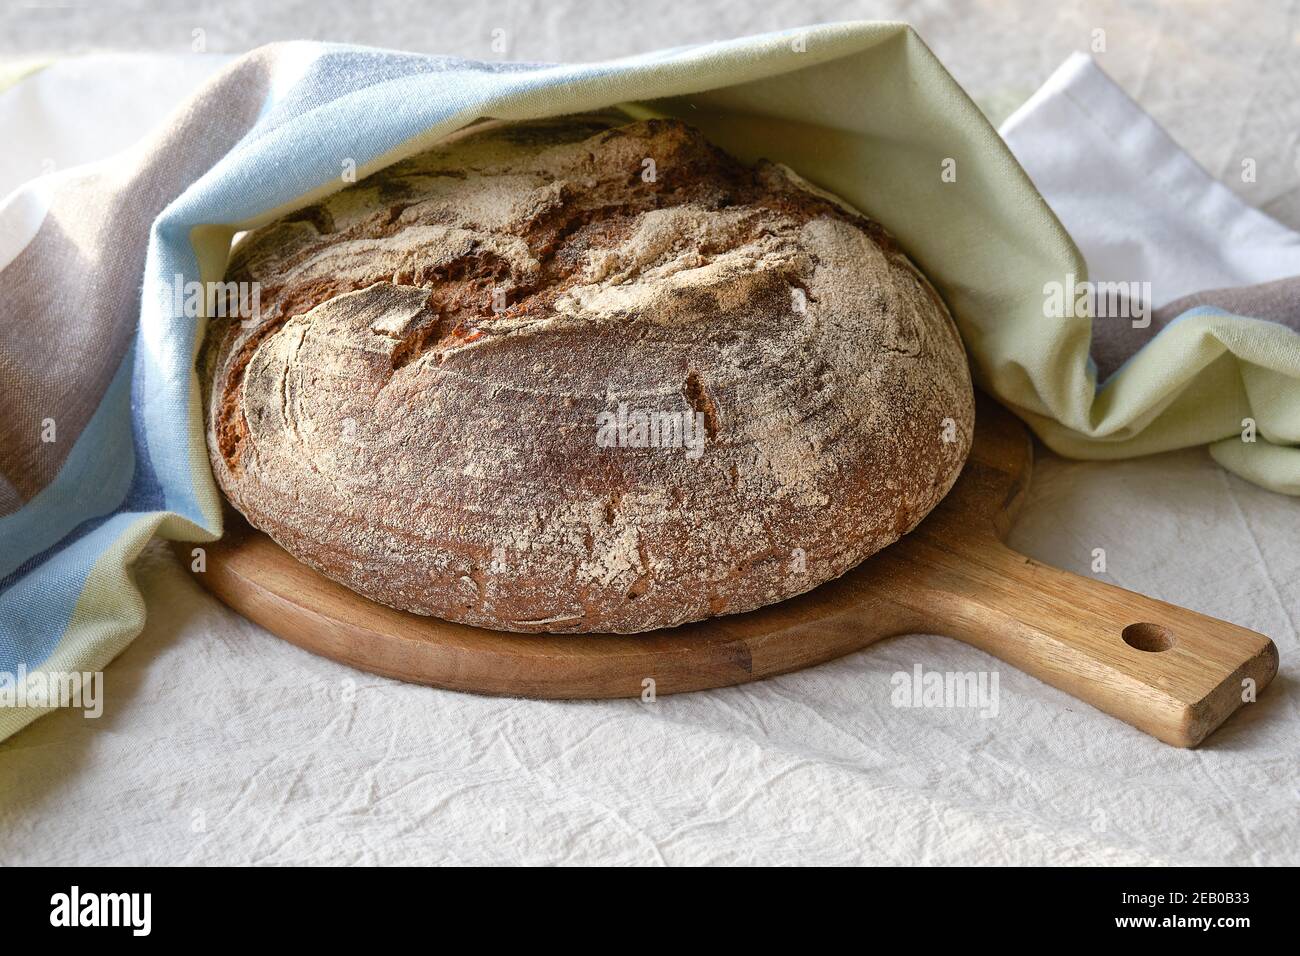 Pas de pain fait main à genoux sur la planche à découper. Le Bauernbrot allemand signifie pain des agriculteurs en anglais. Pain complet de blé de seigle cuit dans une poêle en céramique à la maison. Banque D'Images